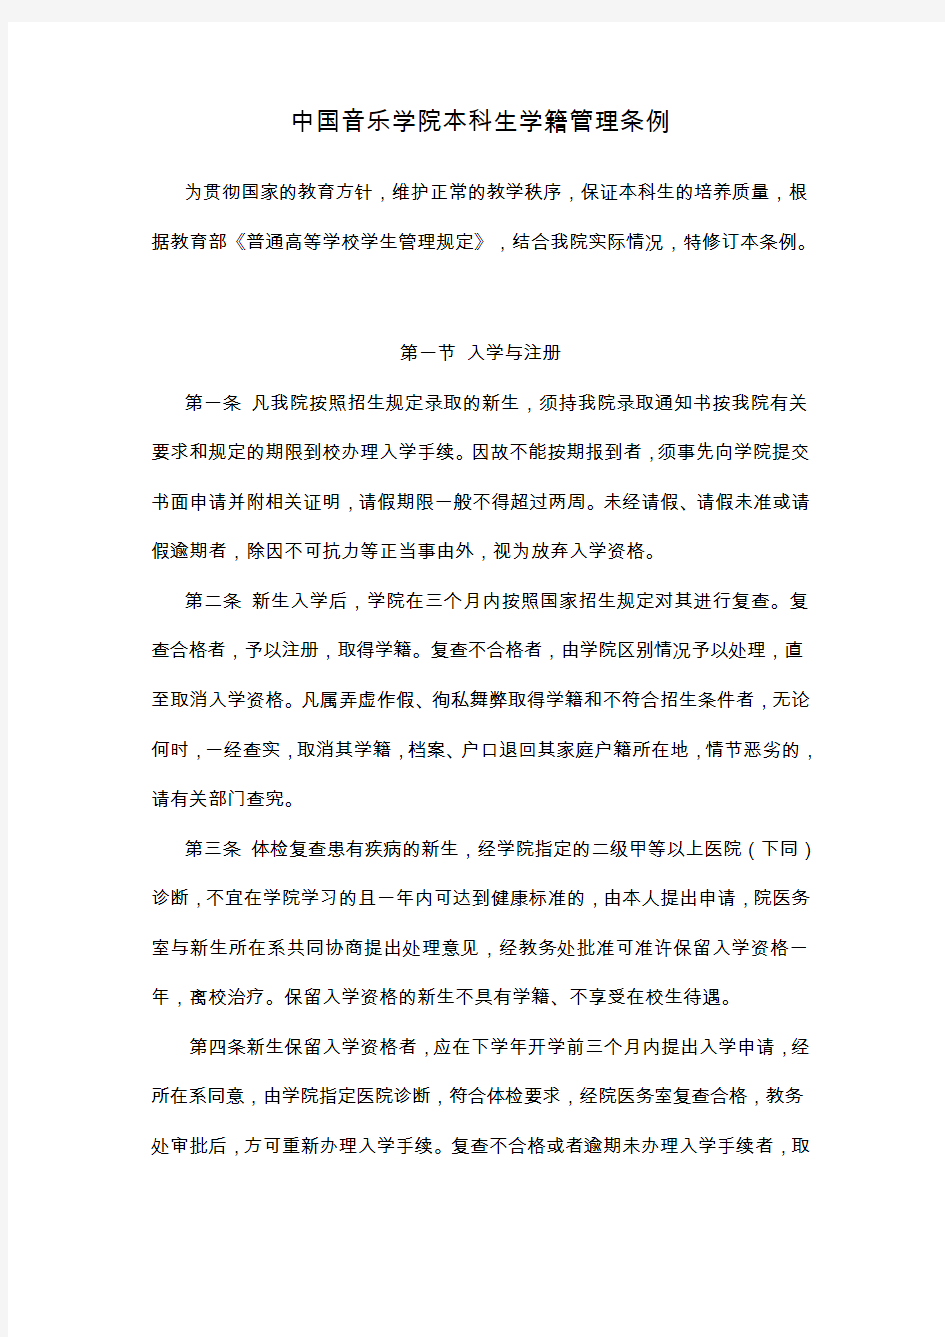 中国音乐学院本科生学籍管理条例